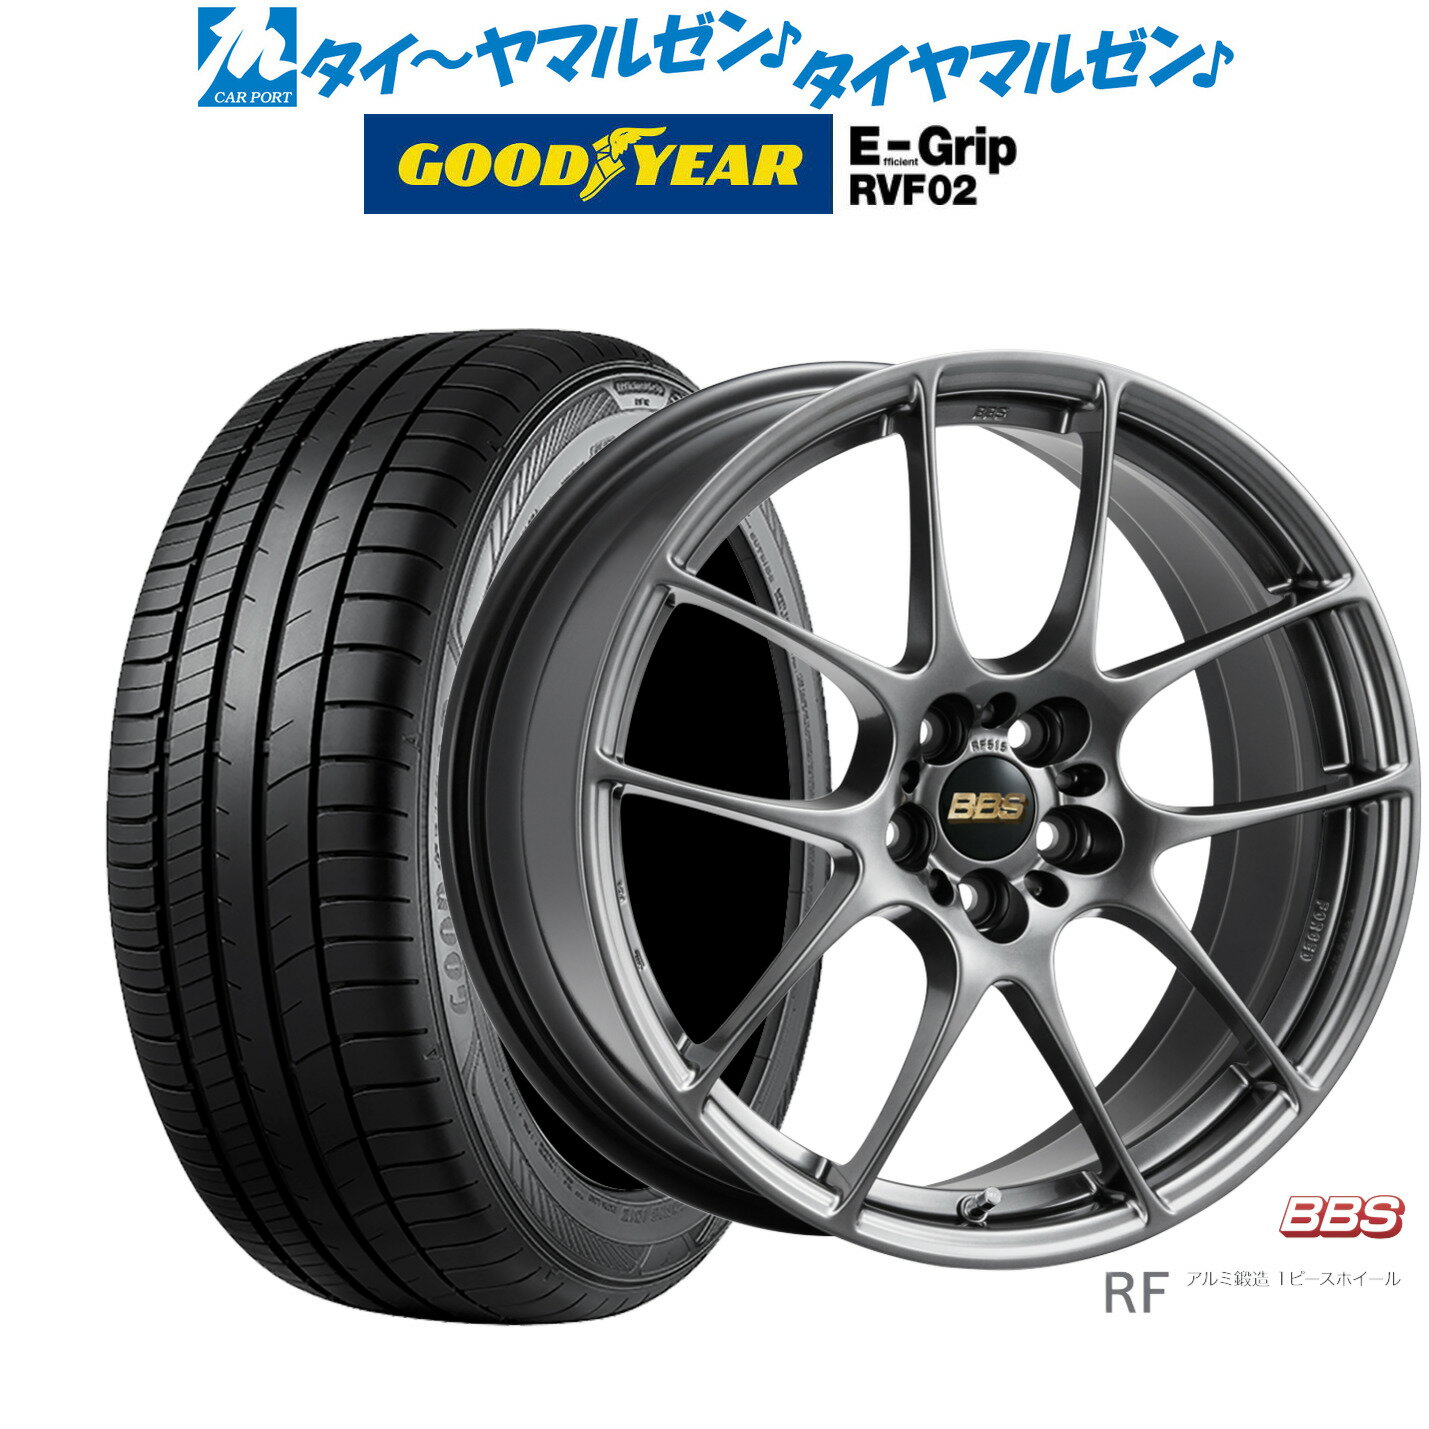 5/20 割引クーポン配布新品 サマータイヤ ホイール4本セットBBS JAPAN RF18インチ 7.5Jグッドイヤー エフィシエント グリップ RVF02225/55R18